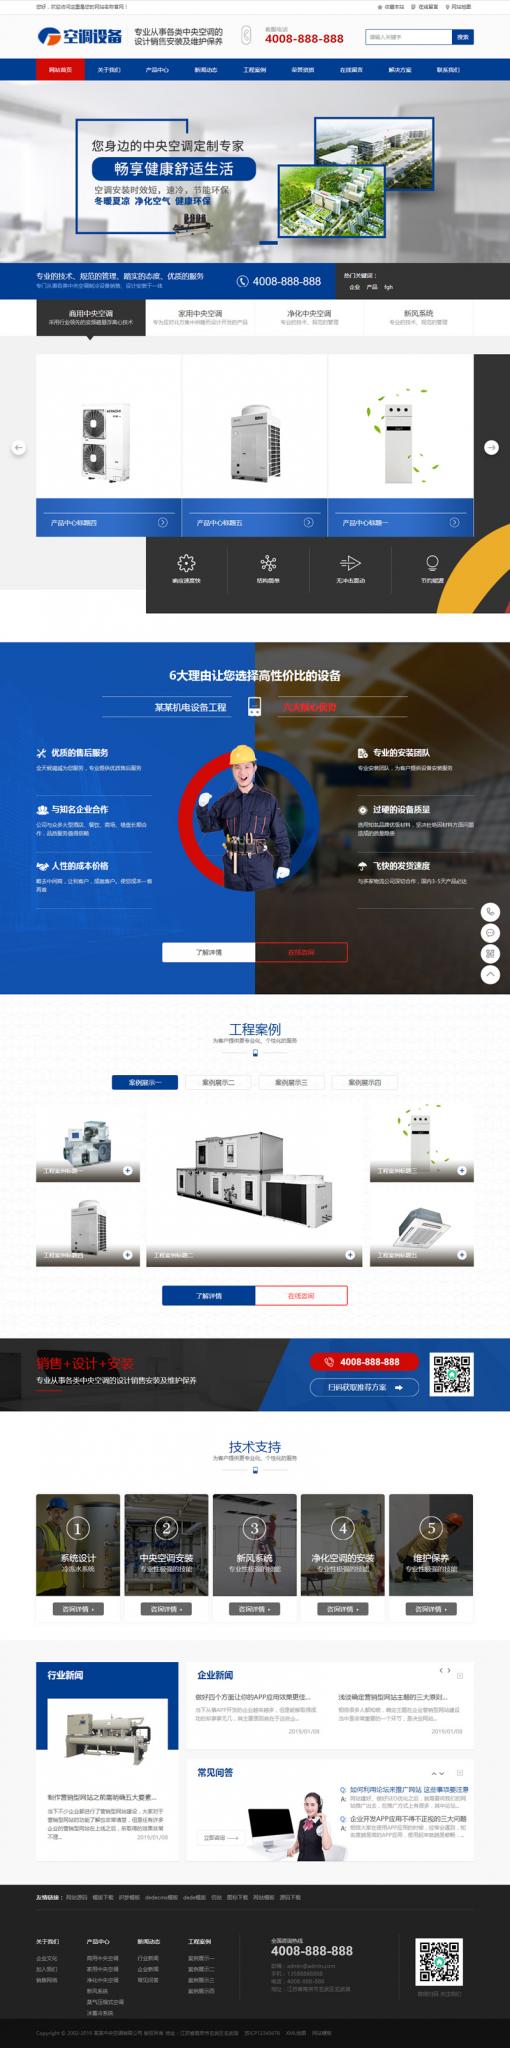 蓝色营销型中央空调设备系统类网站源码 大型制冷设备网站织梦模板-A5资源网